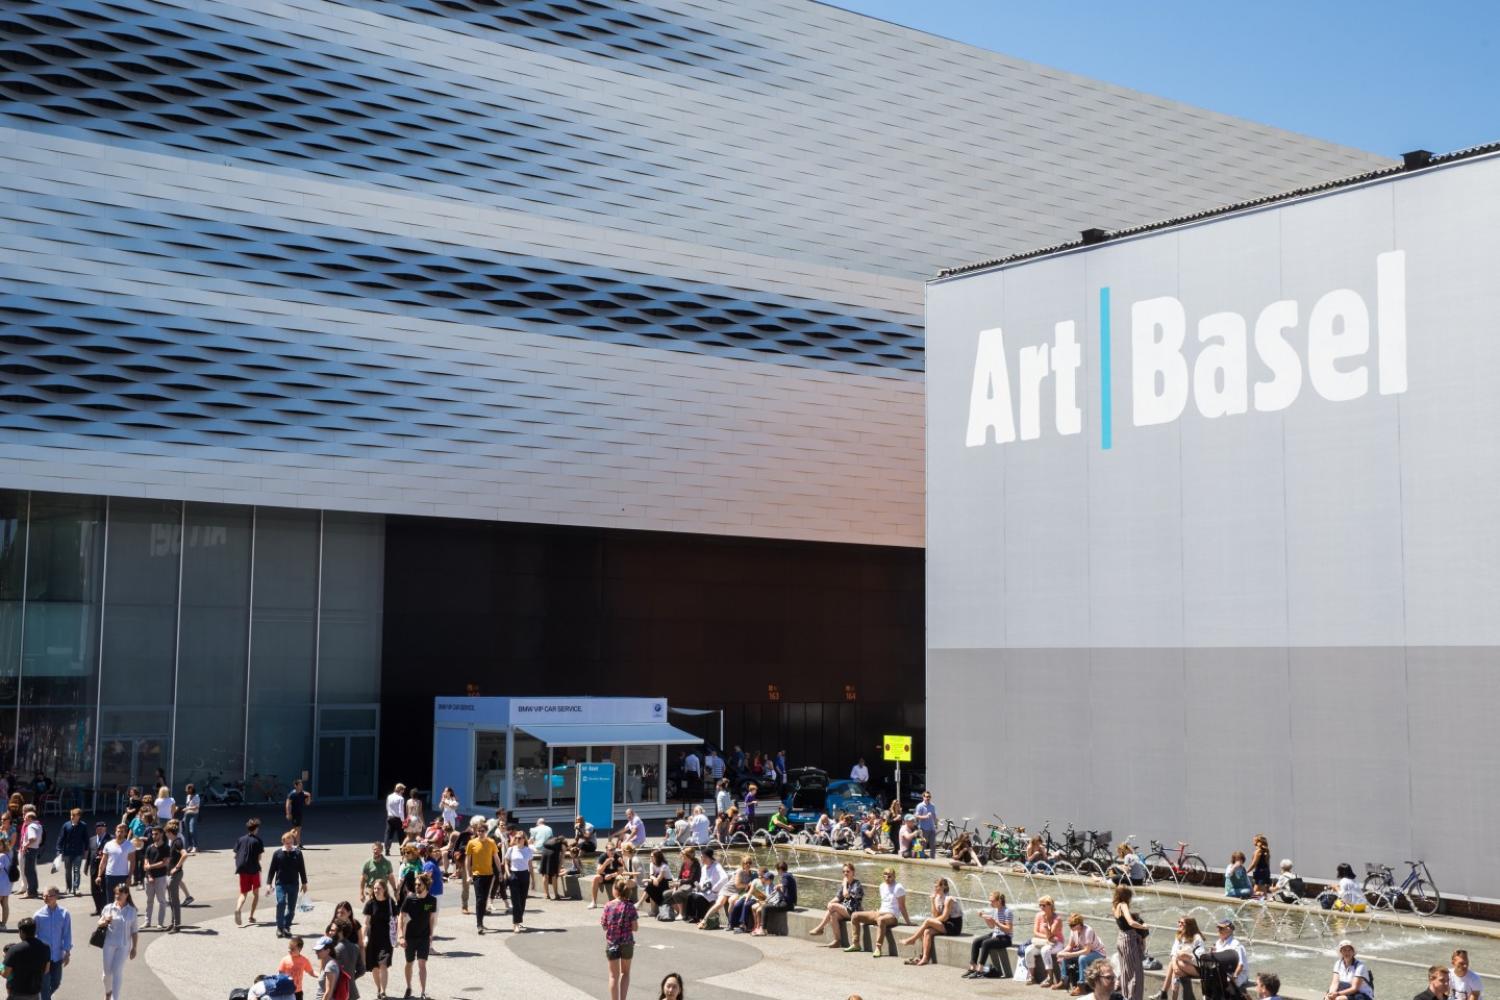 Art Basel 2019